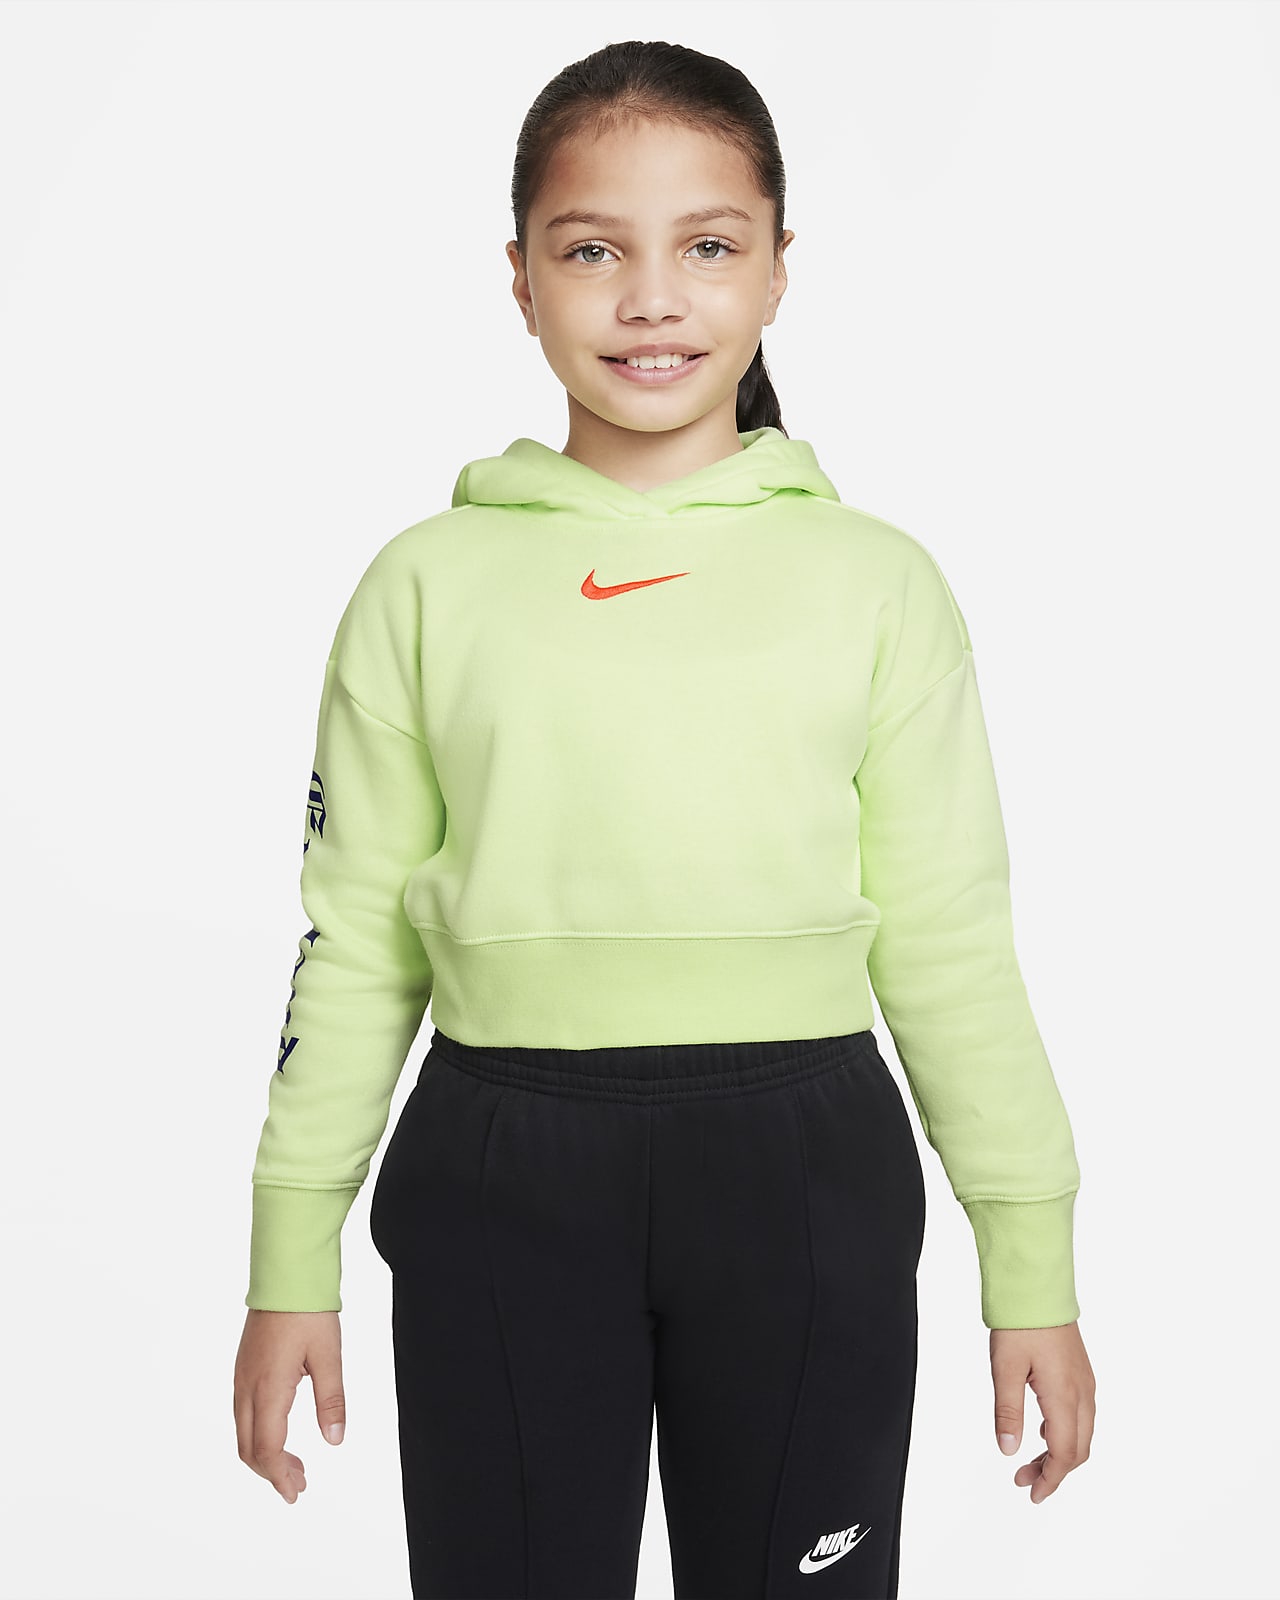 Inglaterra capucha corta - Niño/a. Nike ES